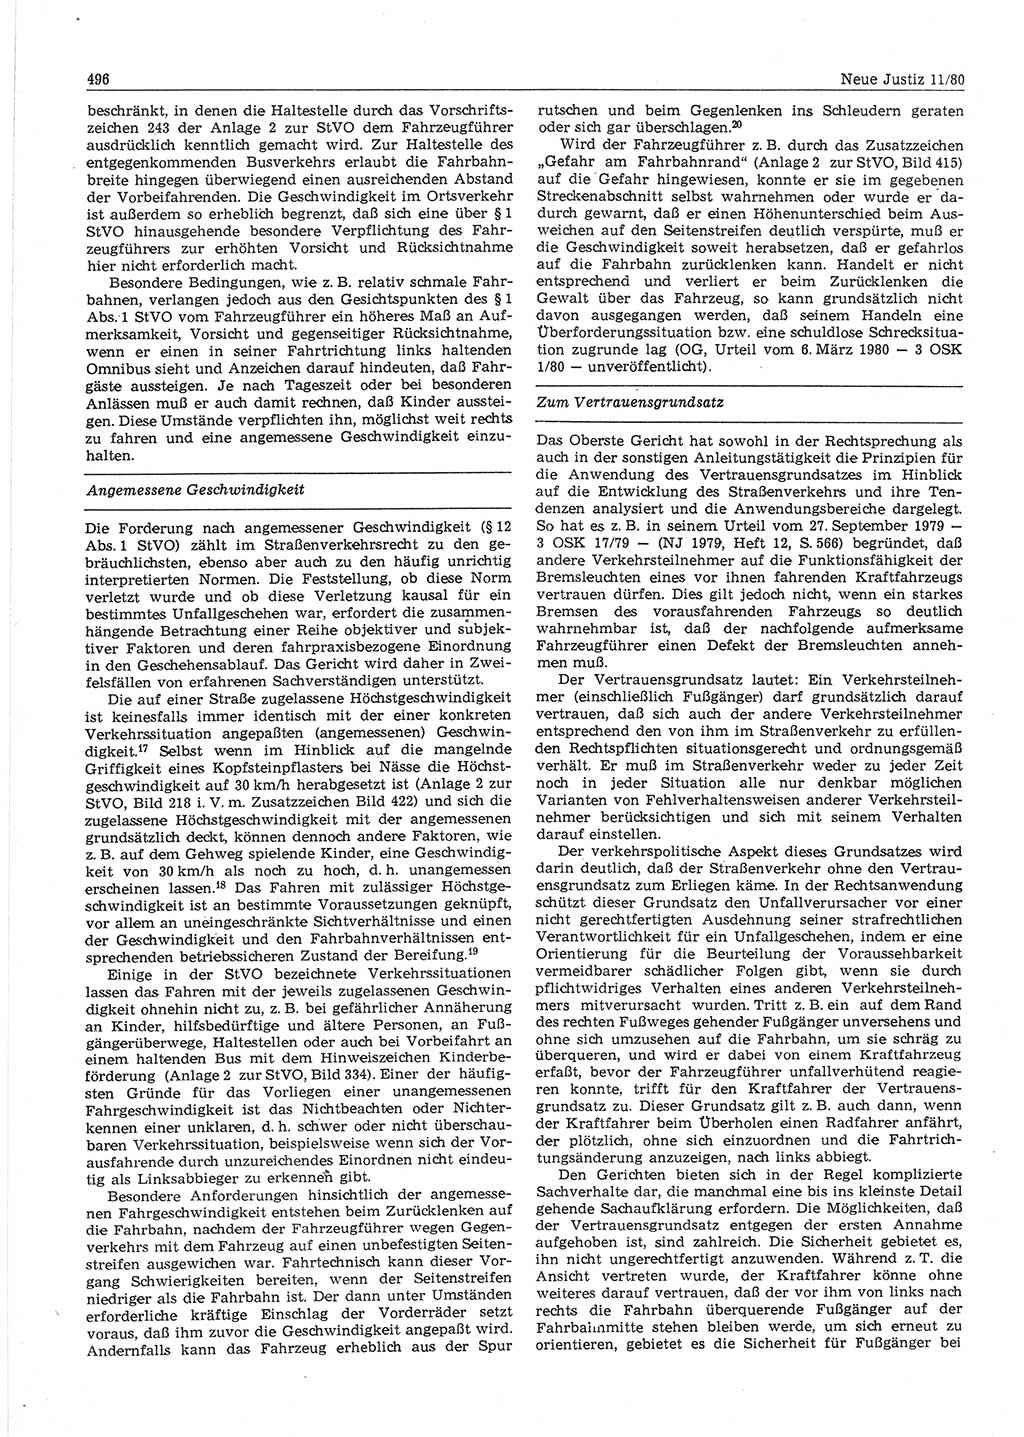 Neue Justiz (NJ), Zeitschrift für sozialistisches Recht und Gesetzlichkeit [Deutsche Demokratische Republik (DDR)], 34. Jahrgang 1980, Seite 496 (NJ DDR 1980, S. 496)